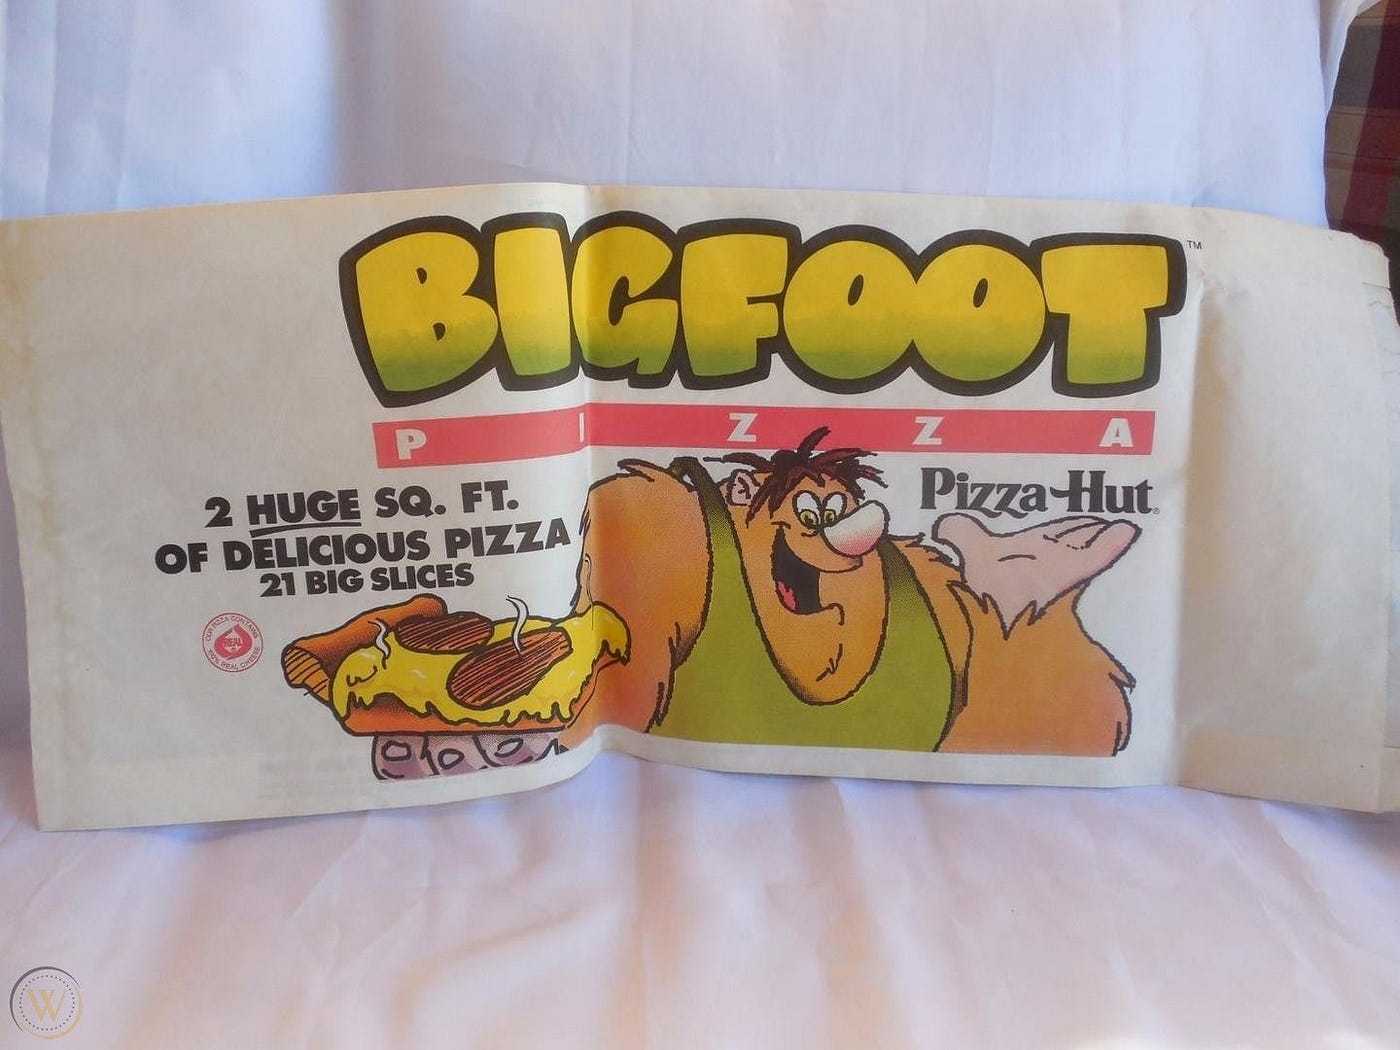 PIZZA HUT'S BIGFOOT BLIMP ACCIDENT.